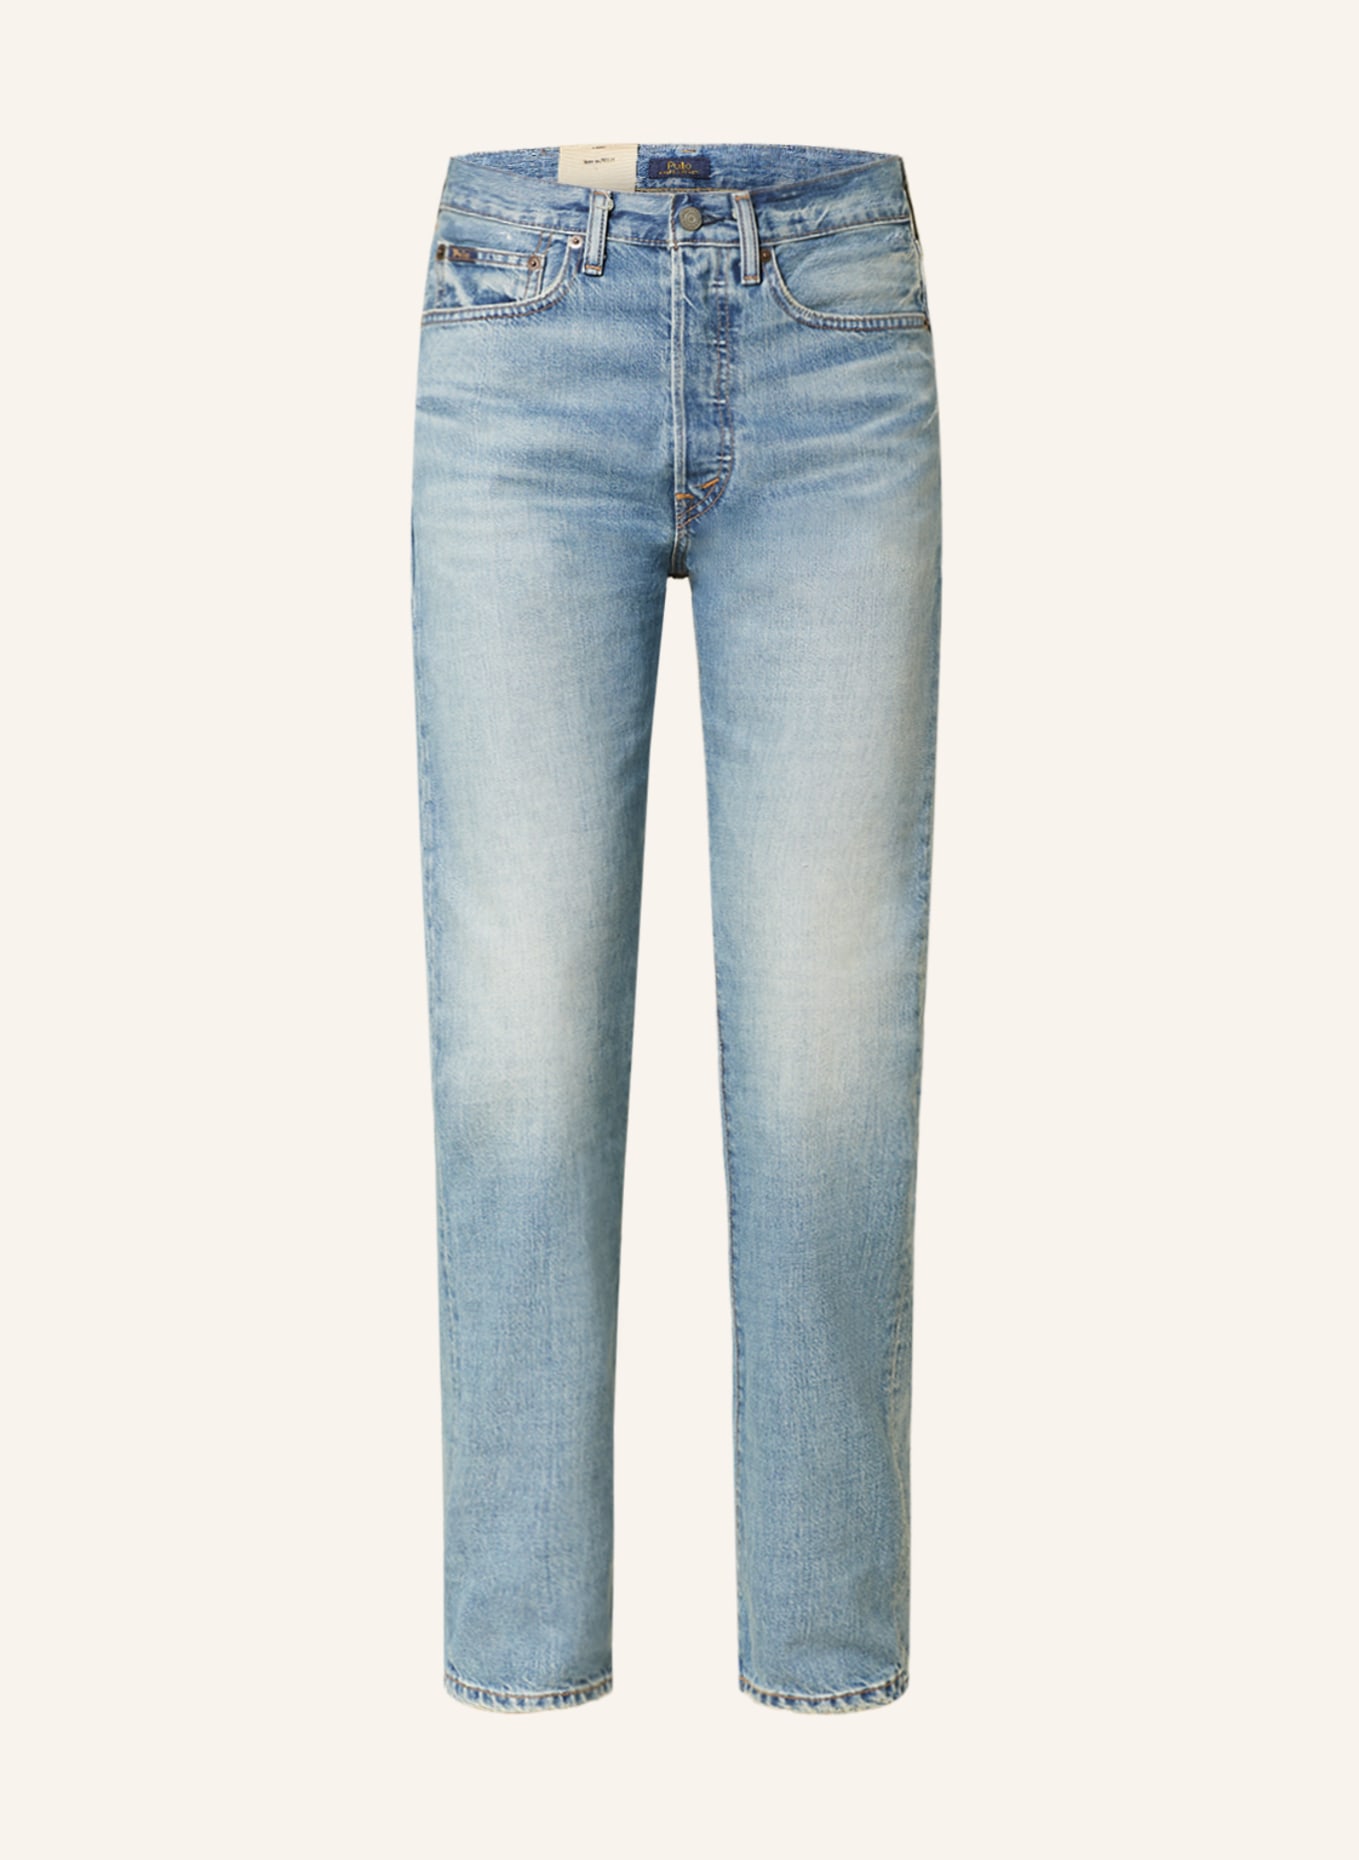 POLO RALPH LAUREN Straight Jeans, Farbe: 001 ADRIATIC WASH (Bild 1)